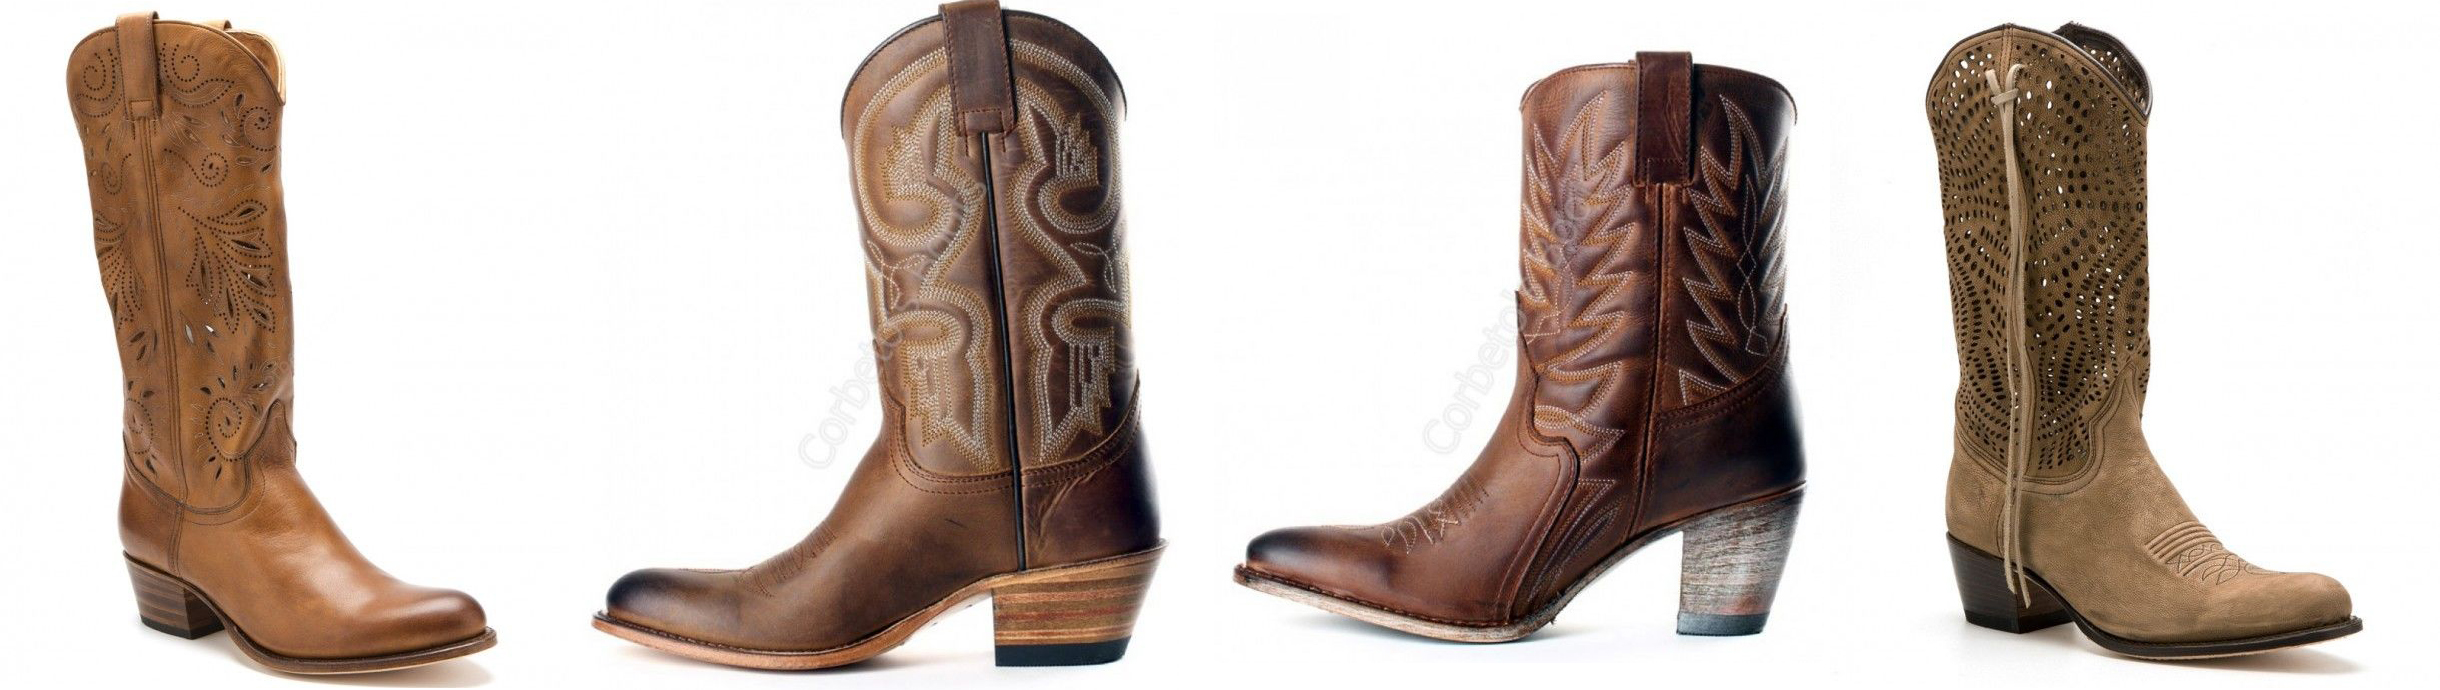 Botas cowboy, tu estilo también en verano - Corbeto's Boots